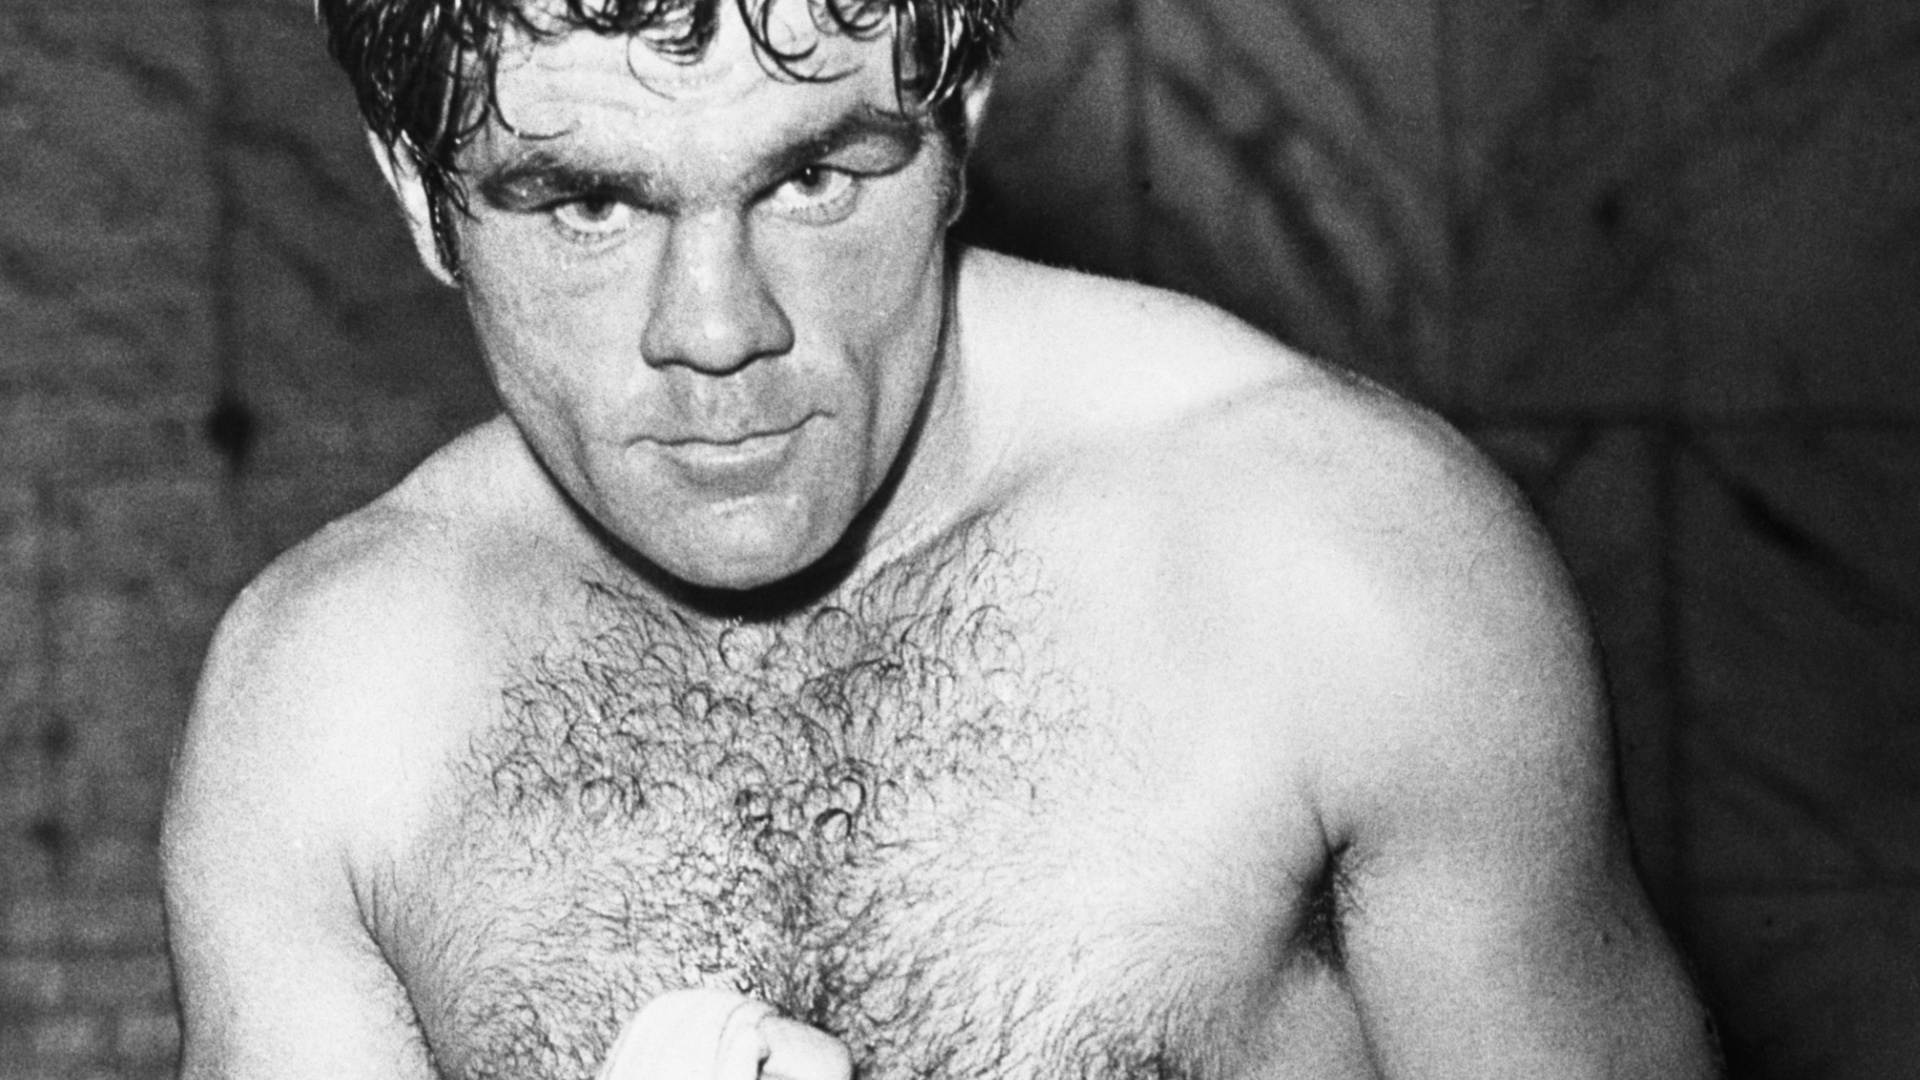 Héroe nacional, campeón de boxeo y ¿asesino en serie?: la oscura historia de Freddie Mills